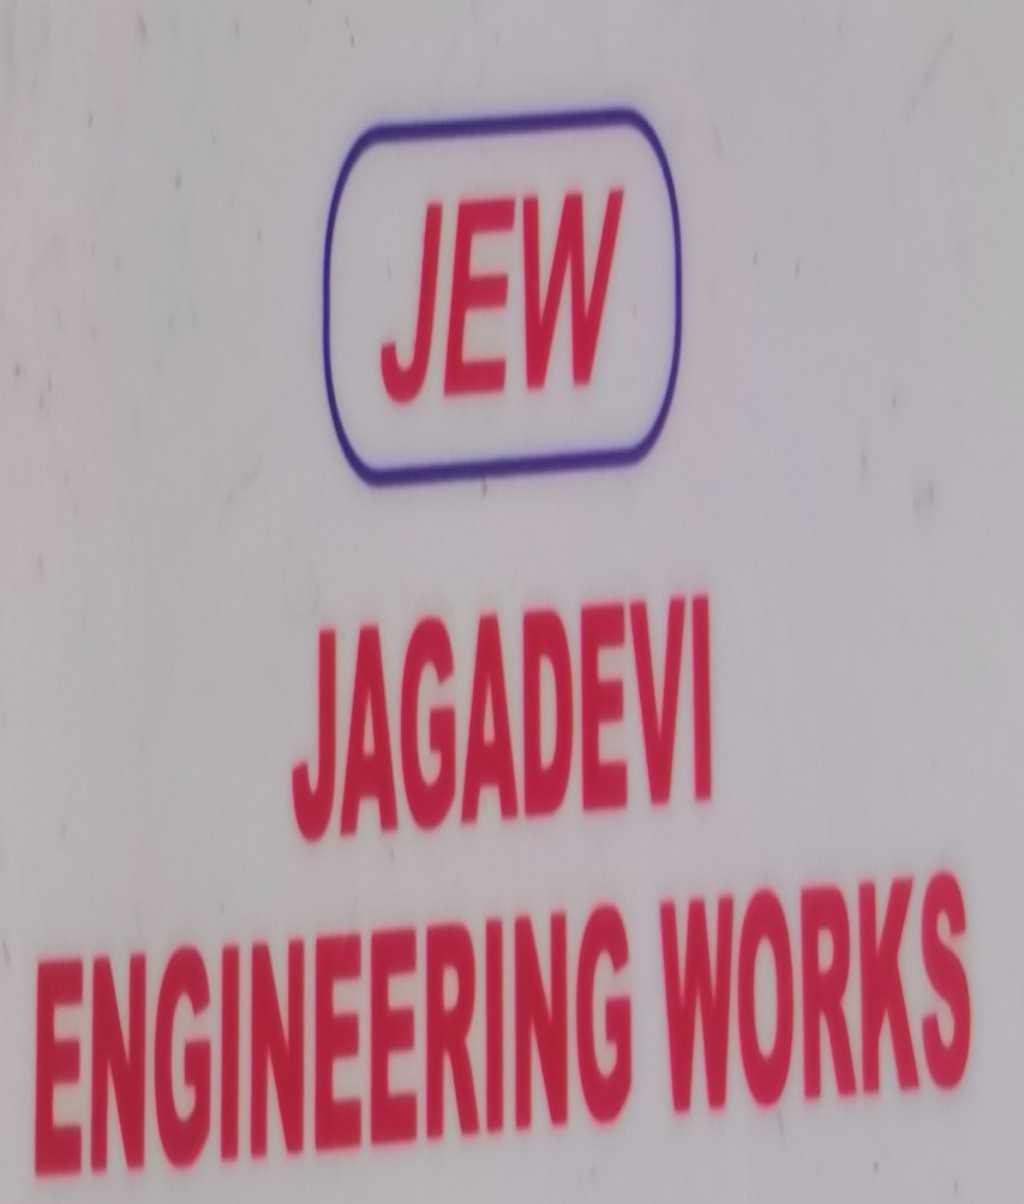 JAGADEVI ENGINEERING WORKS